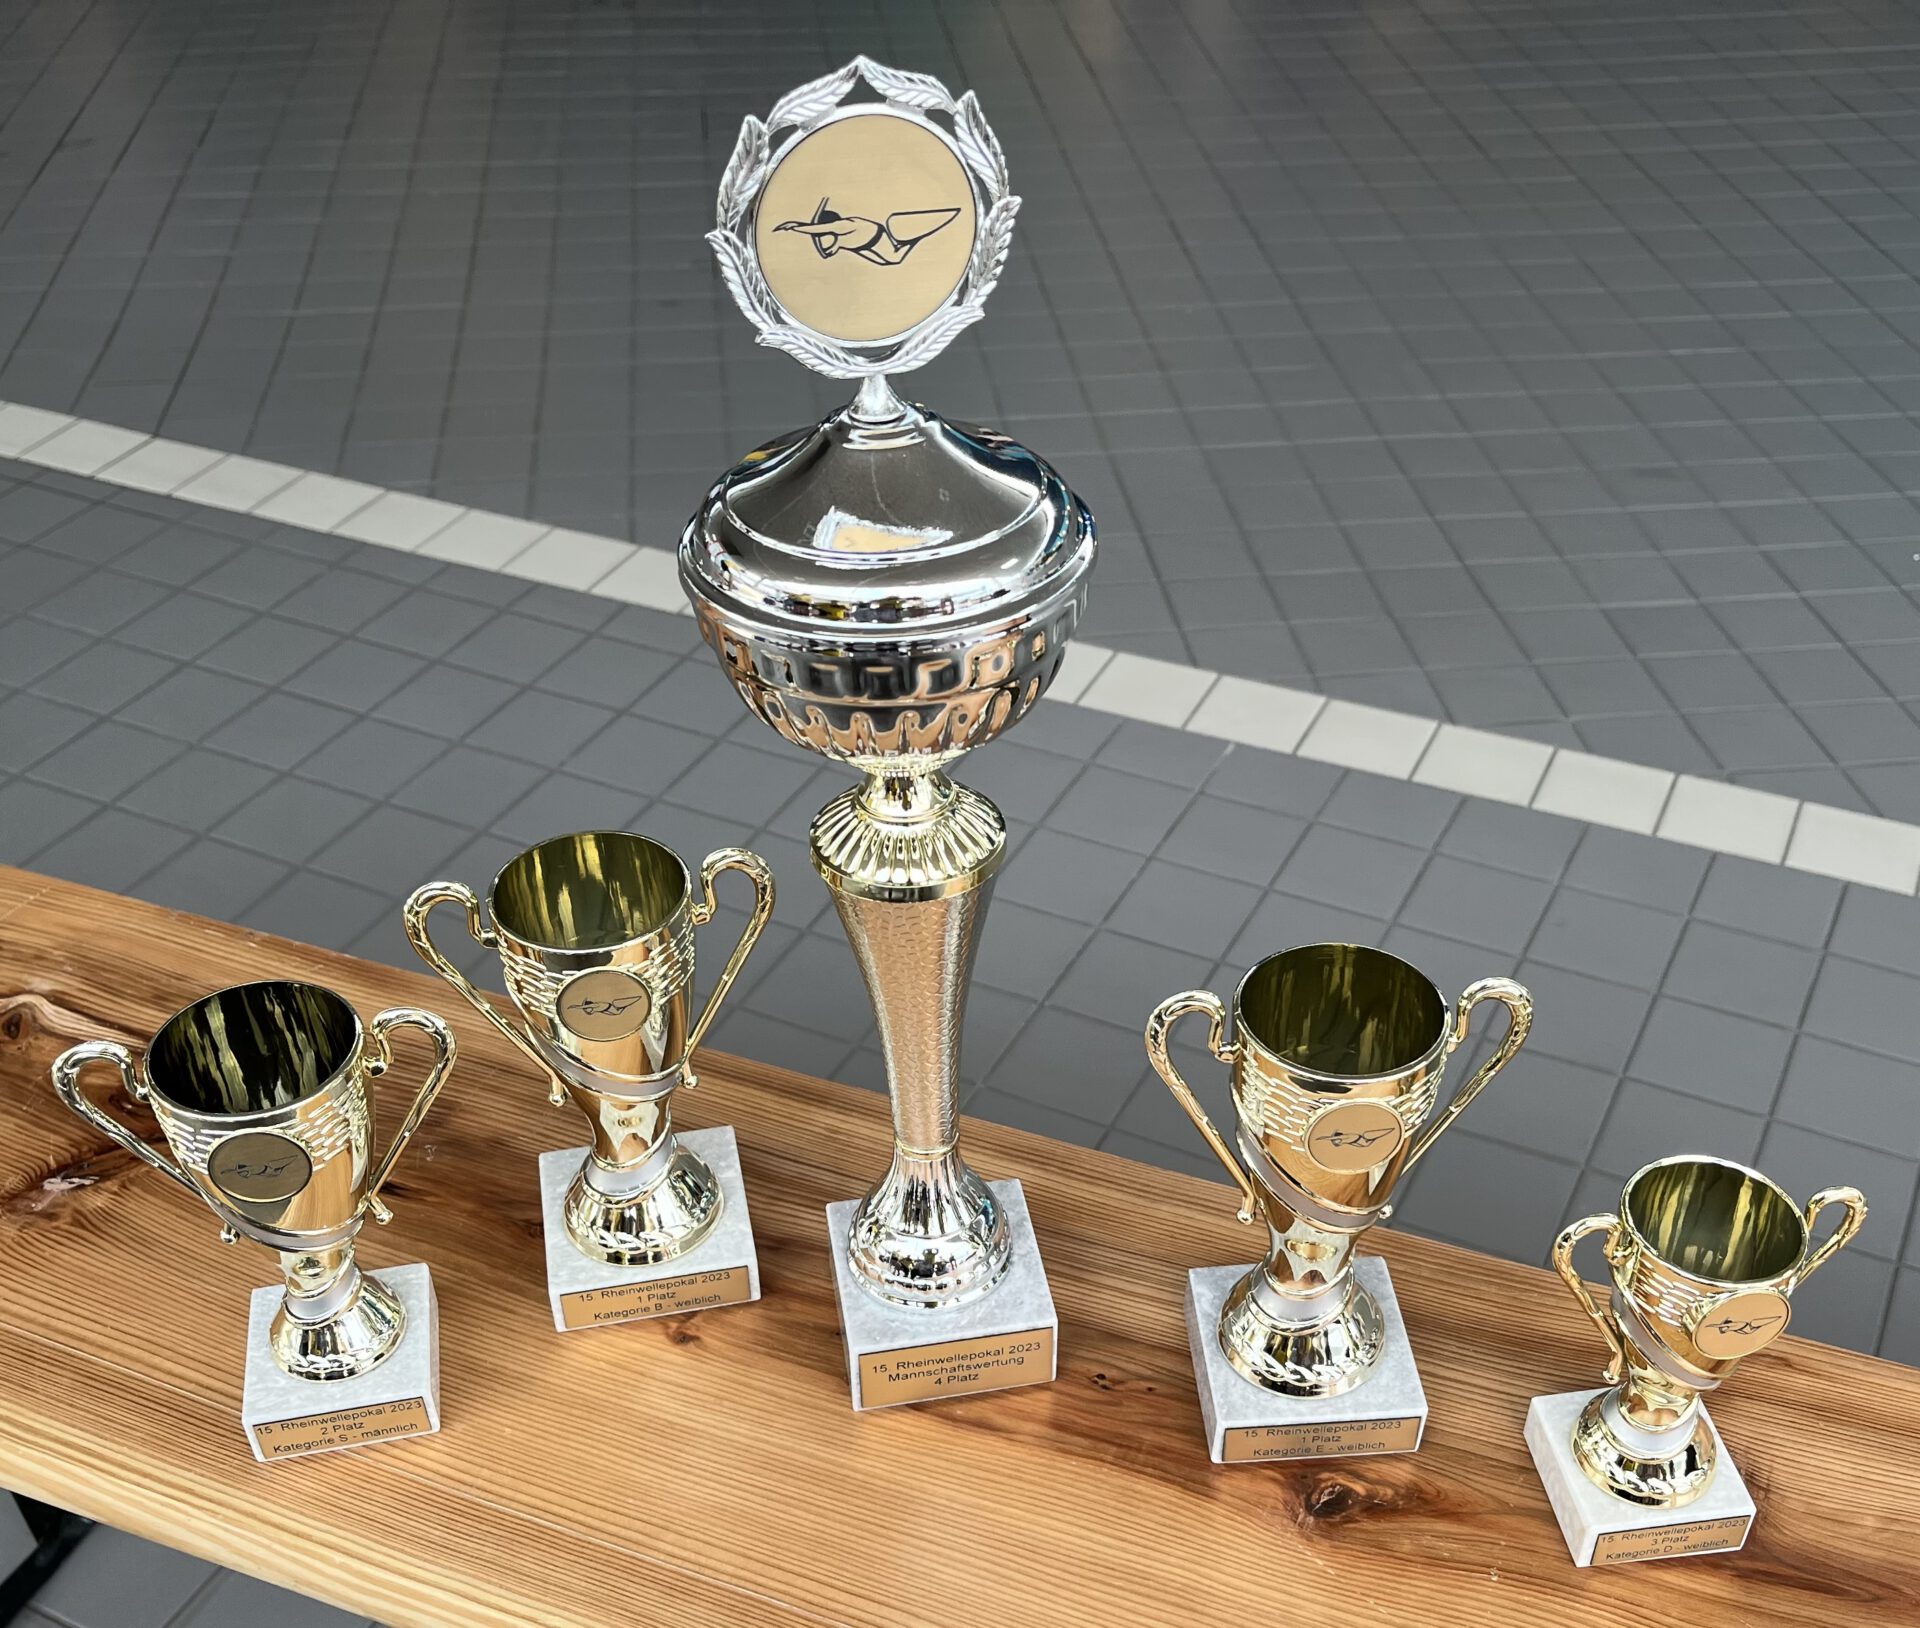 Erfolge beim 15. Rheinwelle Pokal in Bingen